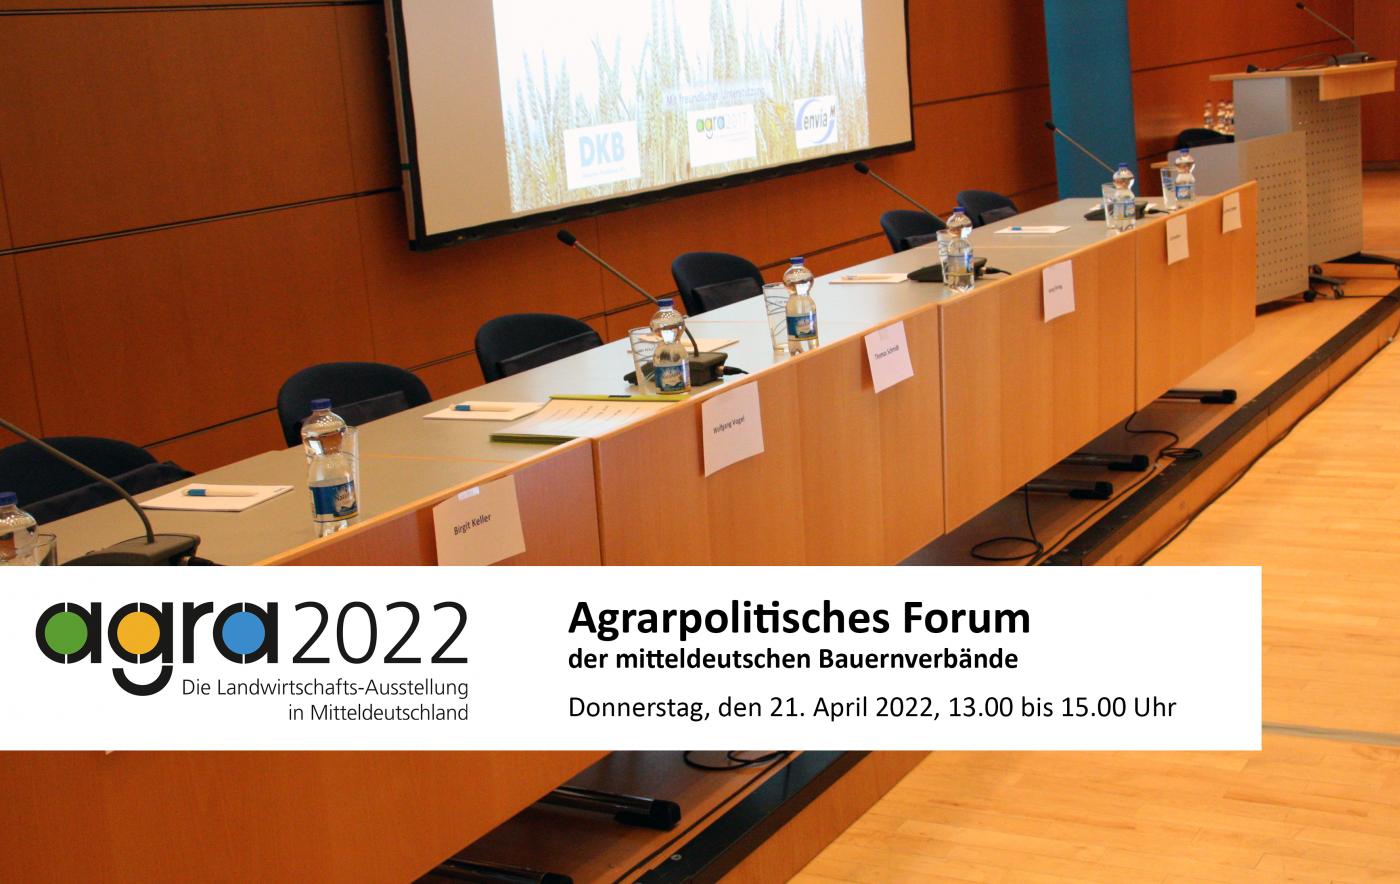 Agrarpolitische Forum auf der agra 2022